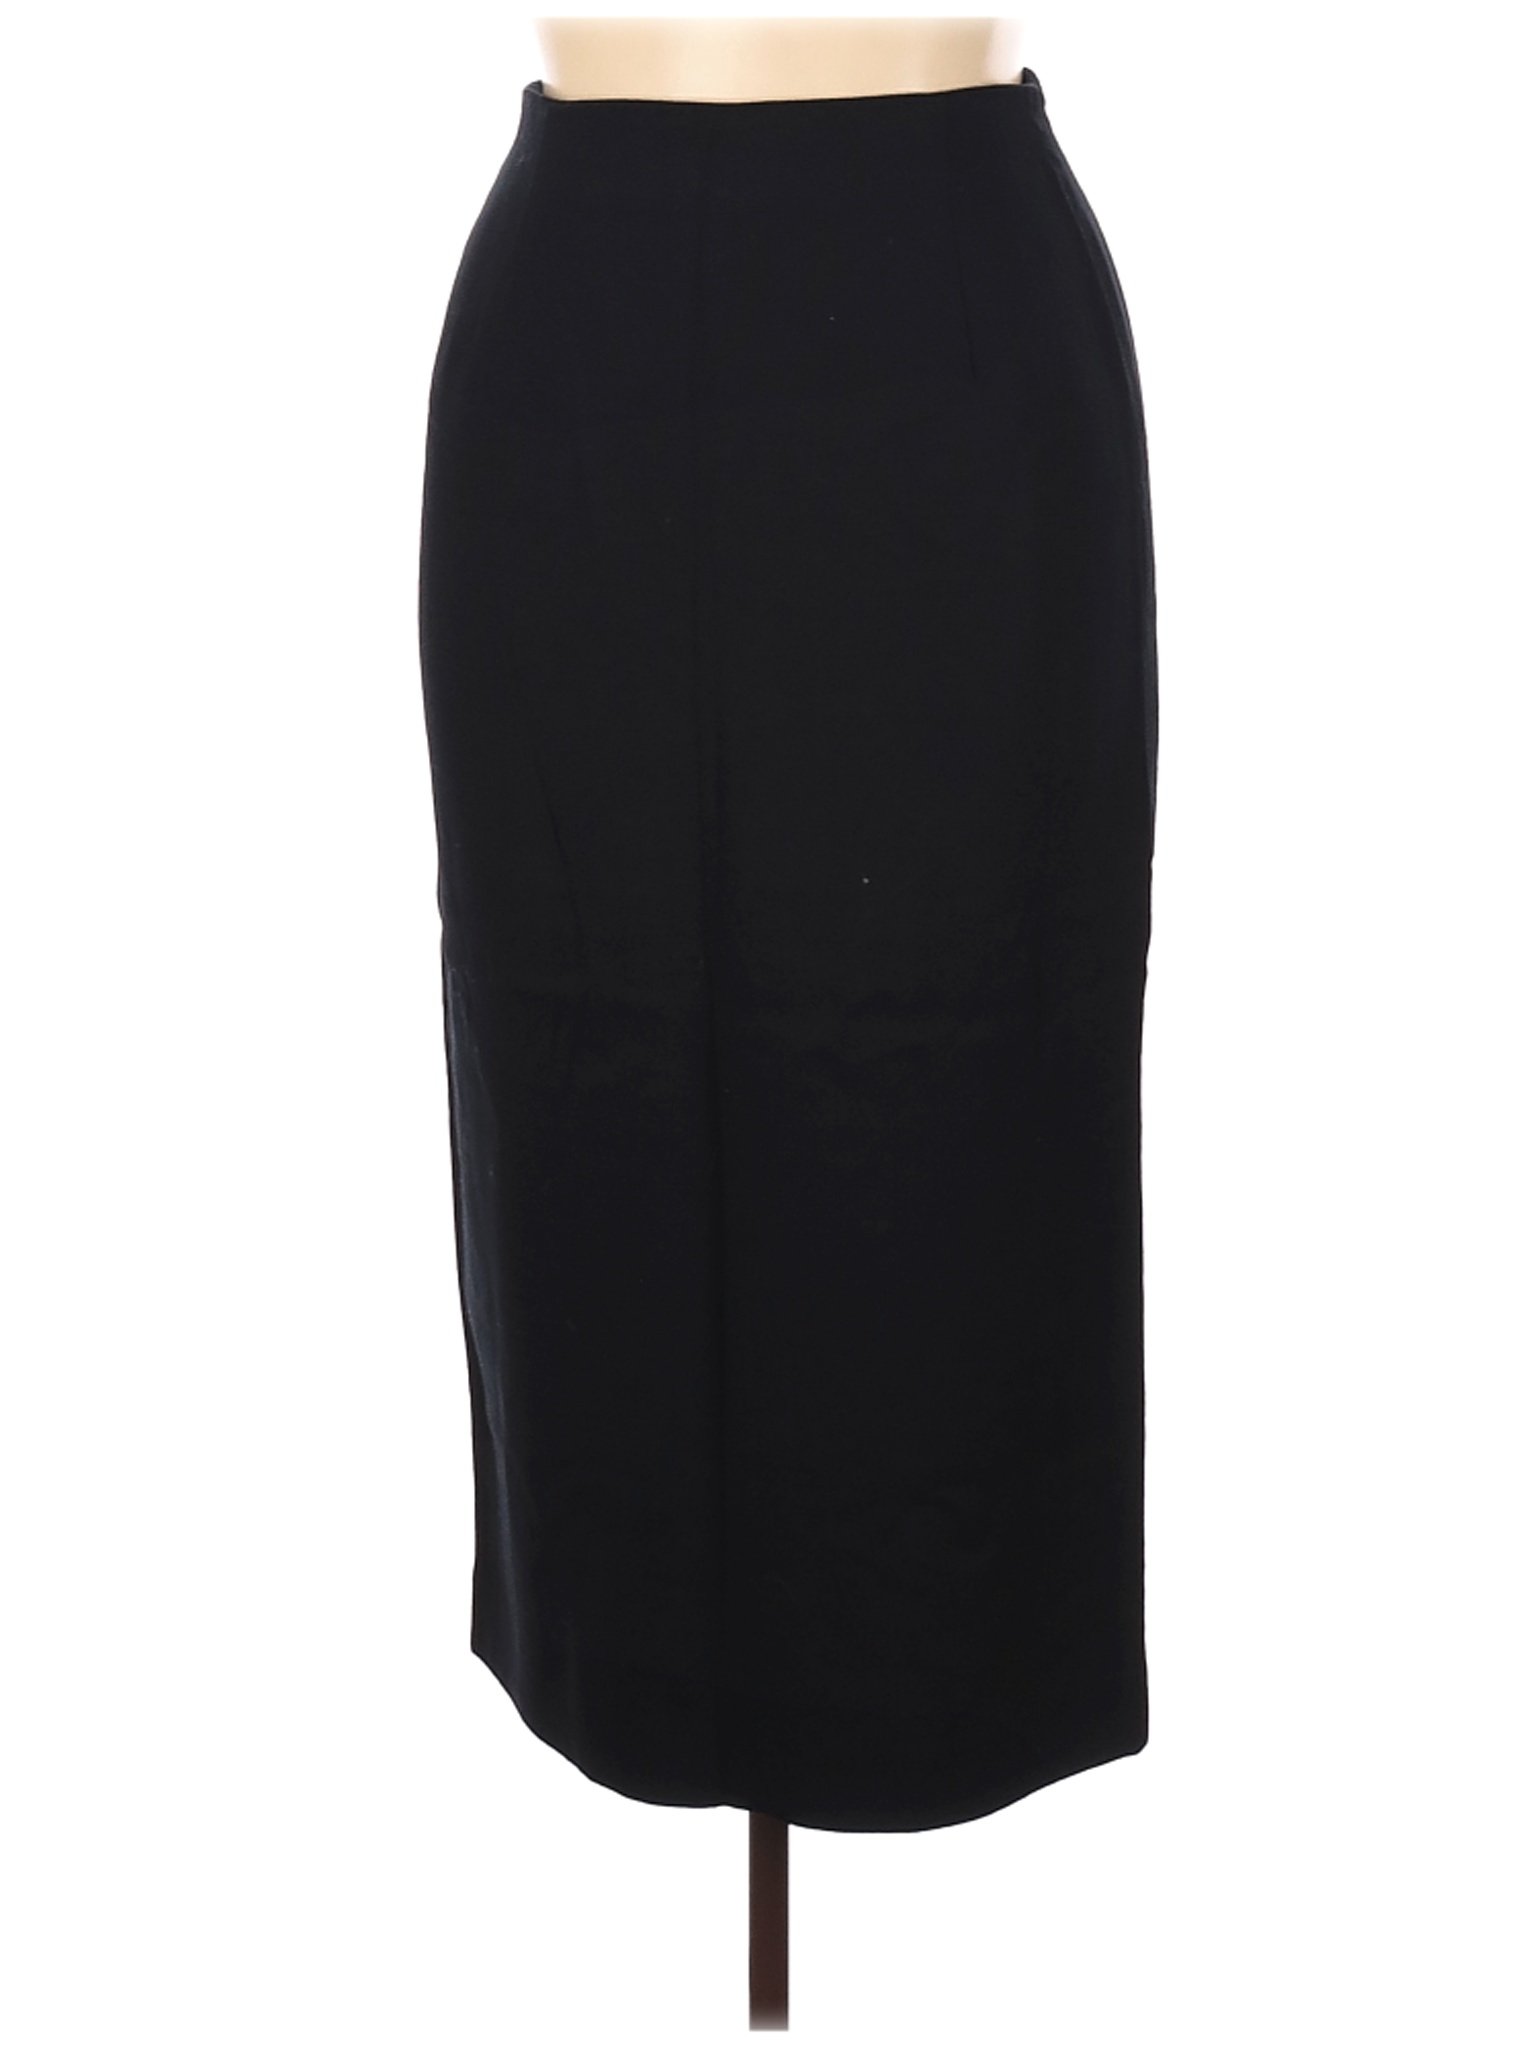 Jones New York Women Black Wool Skirt 14 | eBay